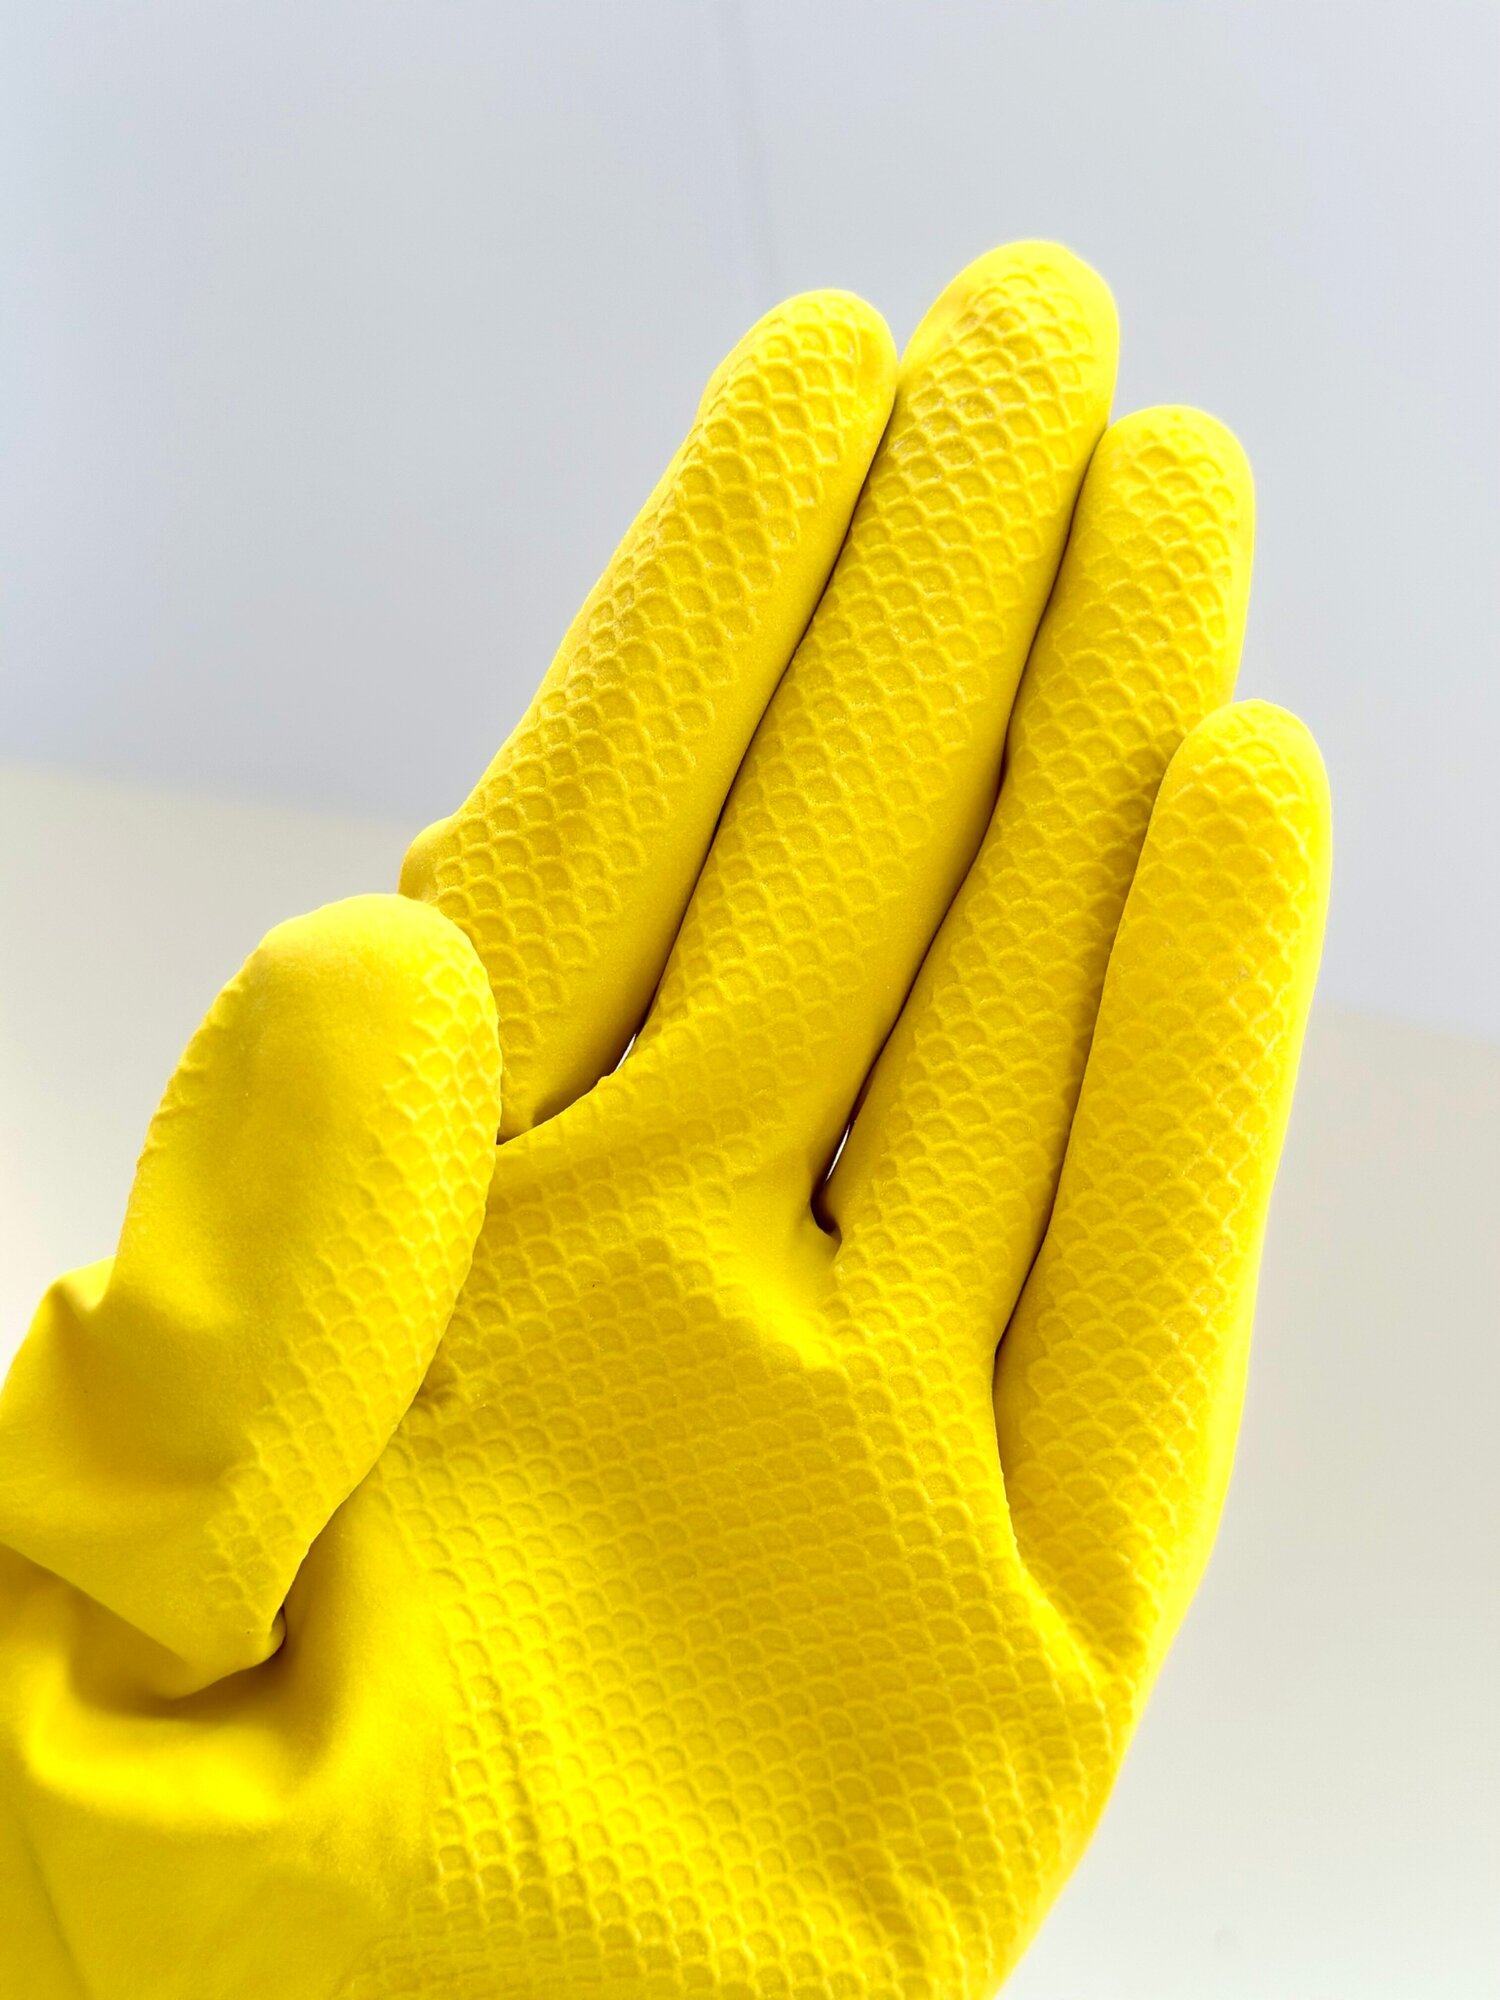 Перчатки латексные, хозяйственные Libry с хлопковым напылением, размер L, желтые